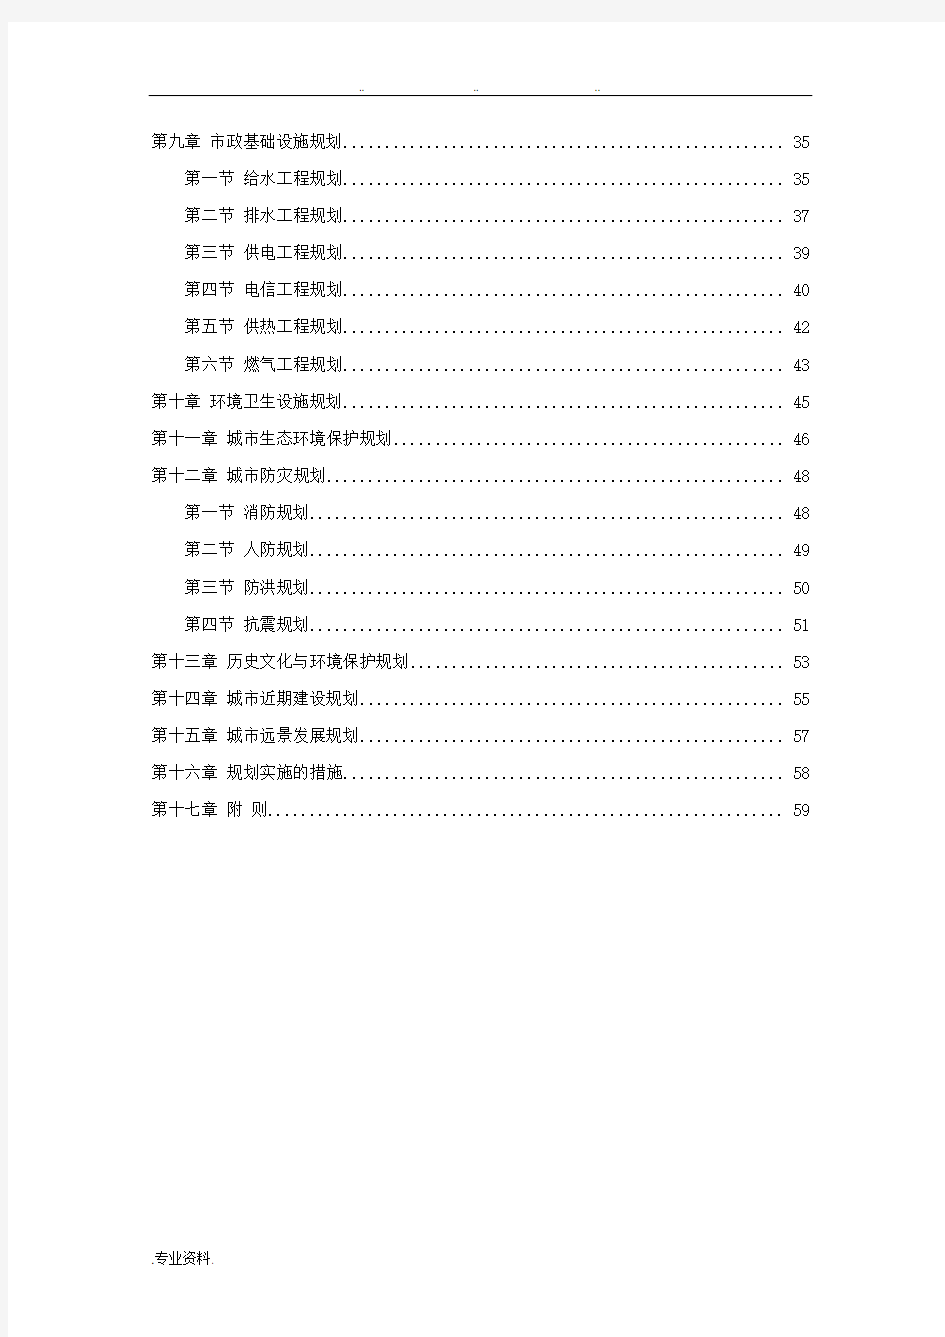 潍坊市城市总体规划(2006_2020)文本